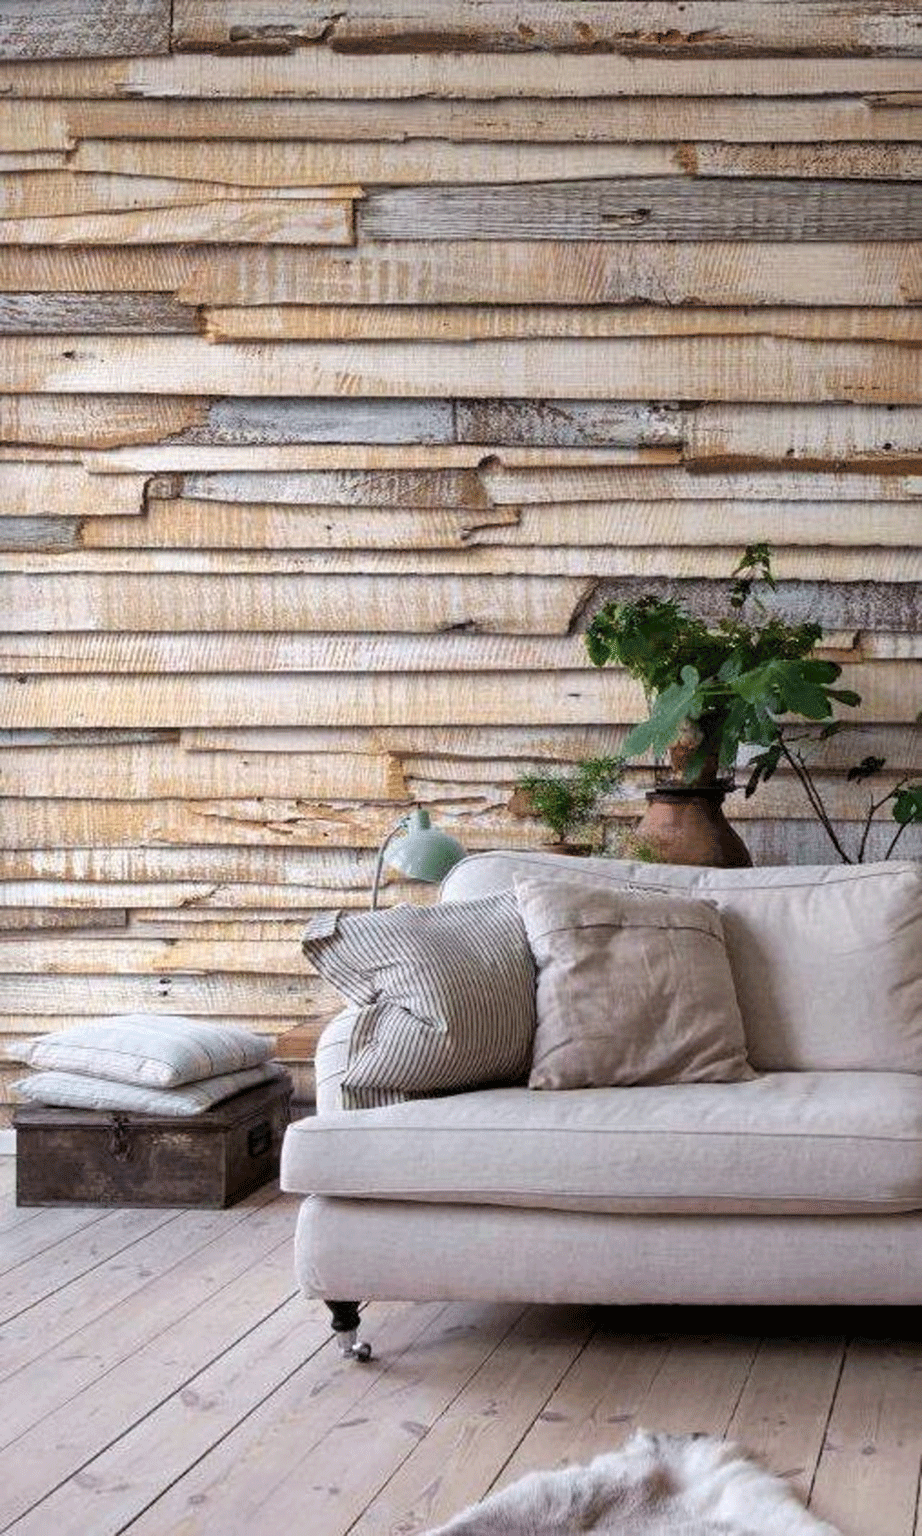 Η χρήση ξύλων από παλιές παλέτες θα σας έρθει όχι μόνο πιο οικονομικά αλλά αισθητικά και πιο ωραία. Φροντίστε μονάχα να τις καθαρίσετε καλά πριν τις τοποθετήσετε στον τοίχο. 